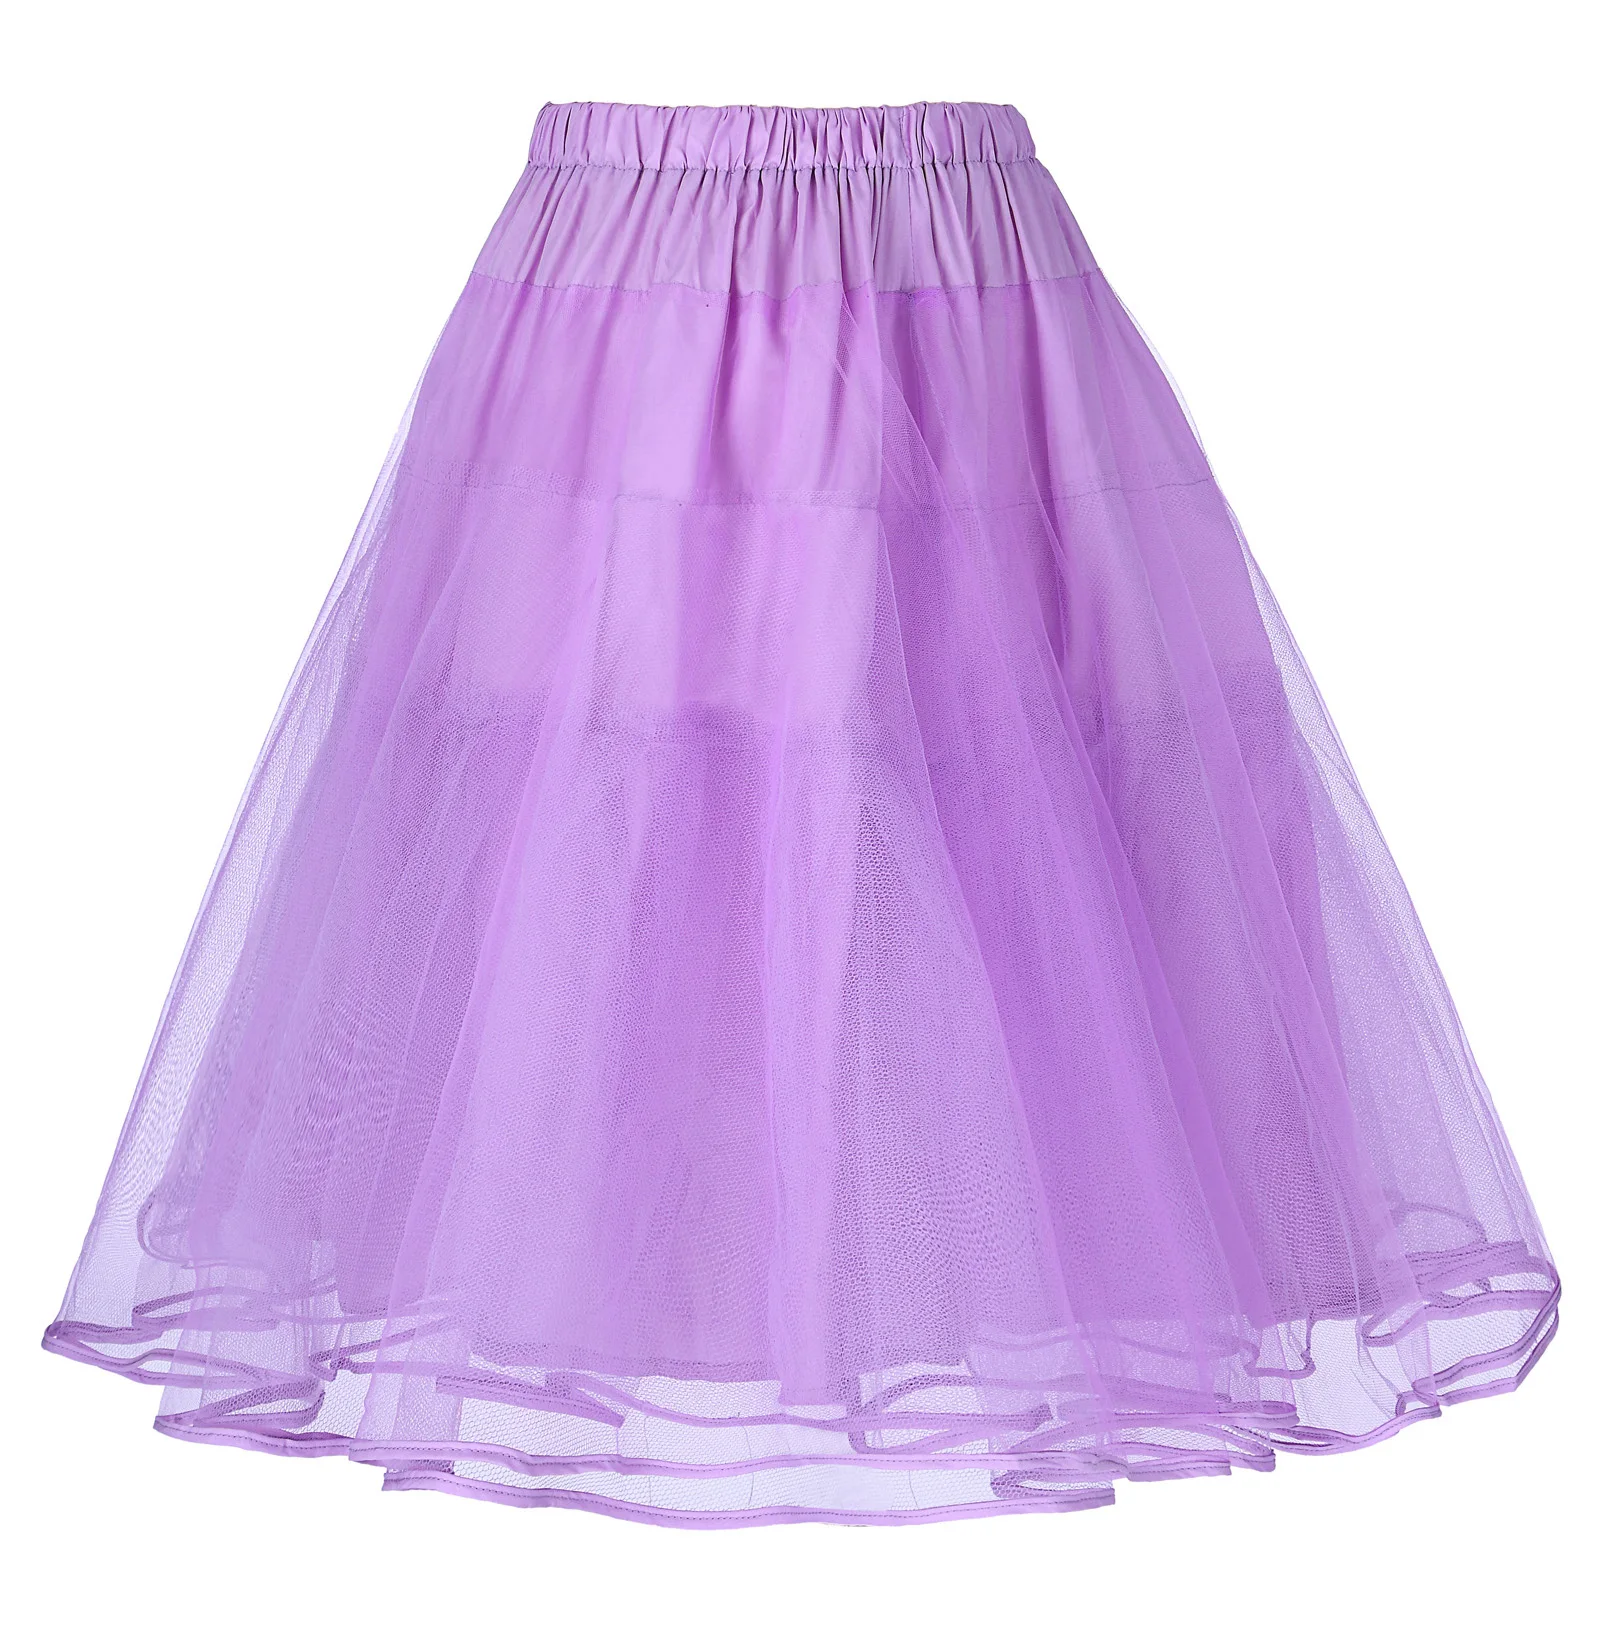 BP черная розовая Женская юбка Роскошная ретро юбка 90s корейский стиль harajuku Винтаж 90s 3 слоя тюль сетка нижняя юбка юбки - Цвет: Wisteria